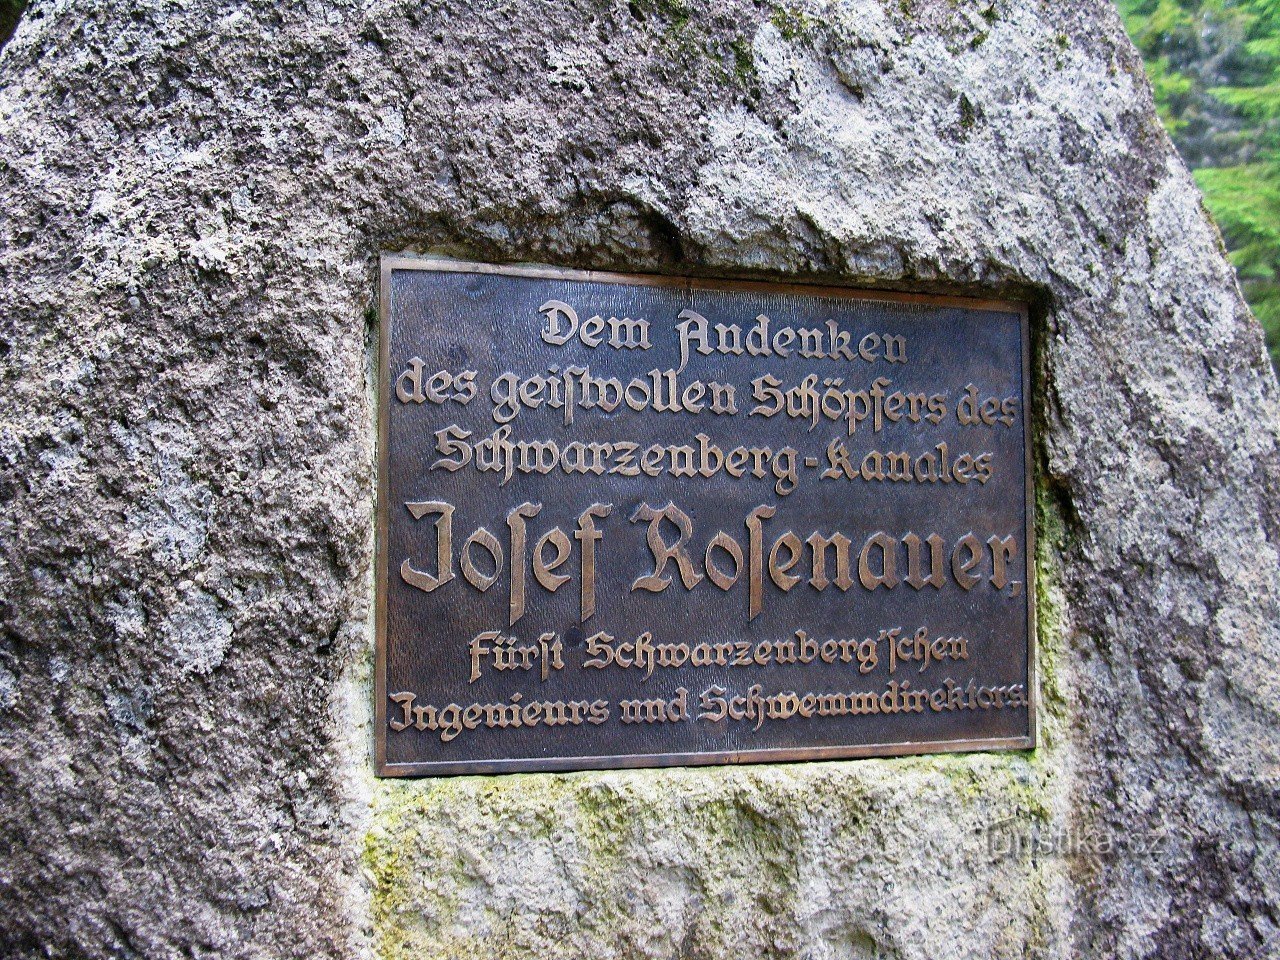 Napis na spomeniku je v nemščini